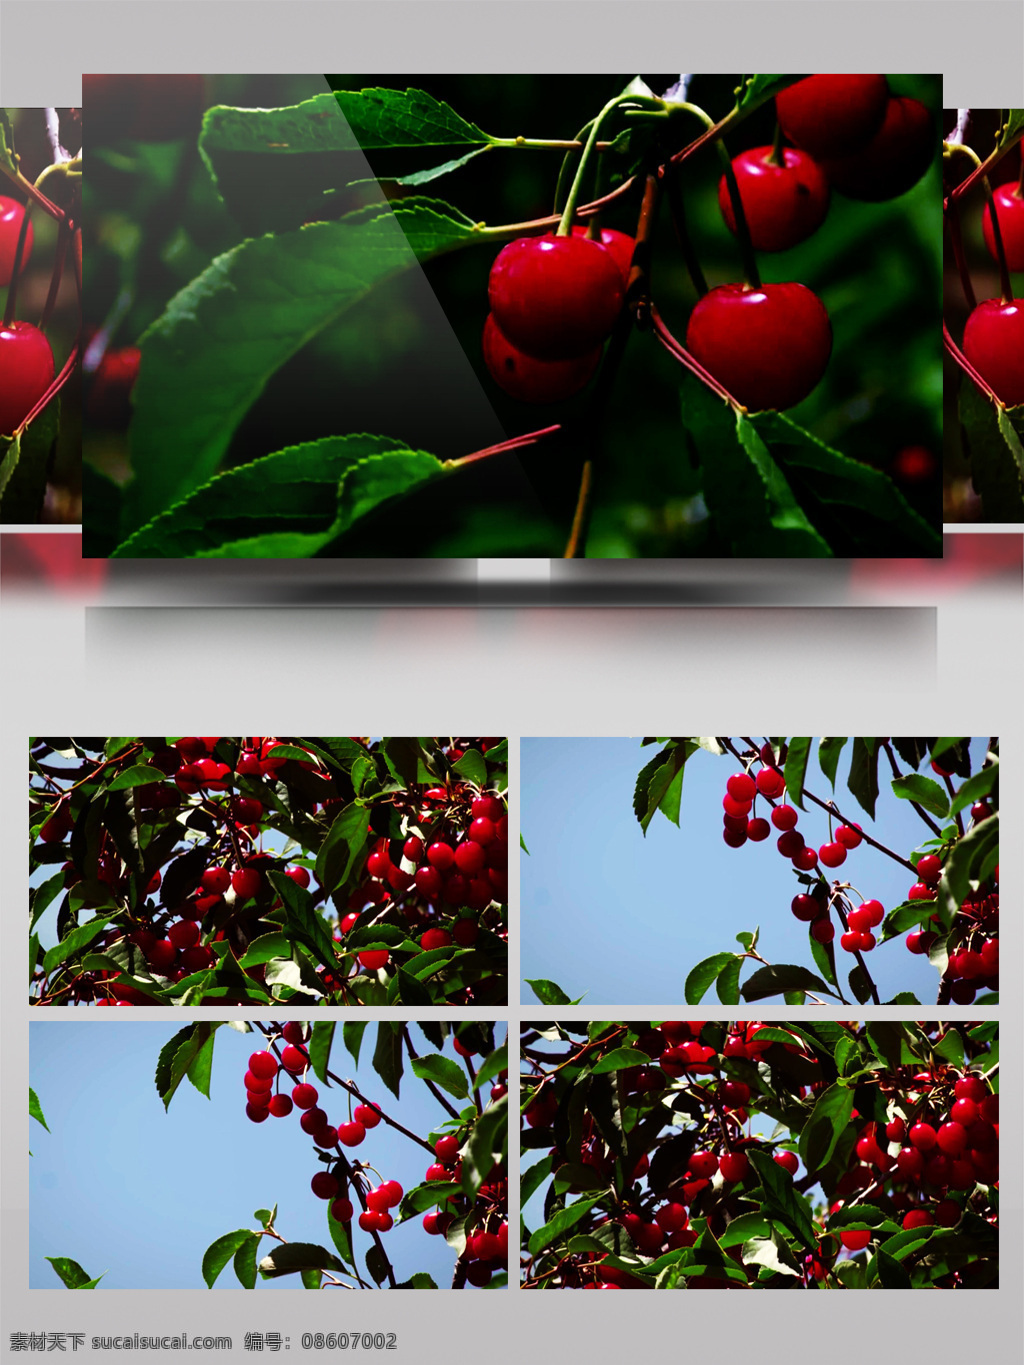 晶莹剔透 红 樱桃 视频 果实 红樱桃 晶莹 农业 剔透 植物